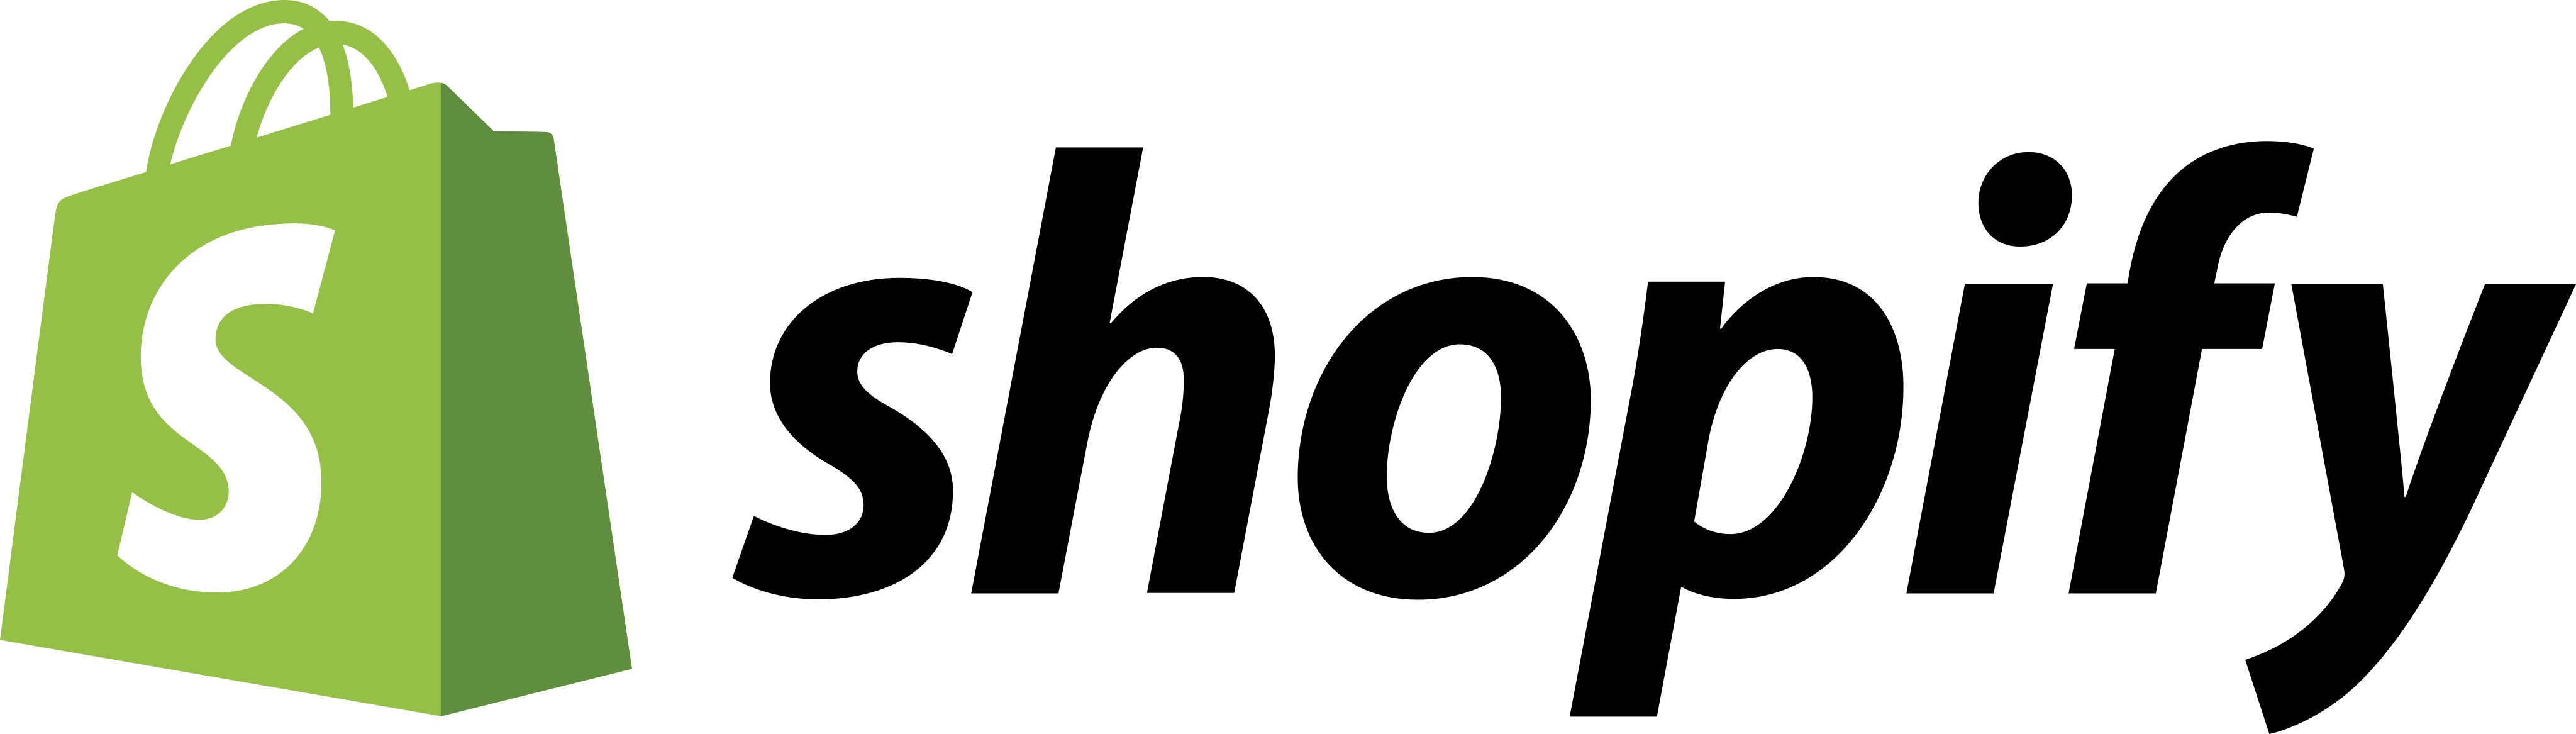 shopify logo - Shopify Logo